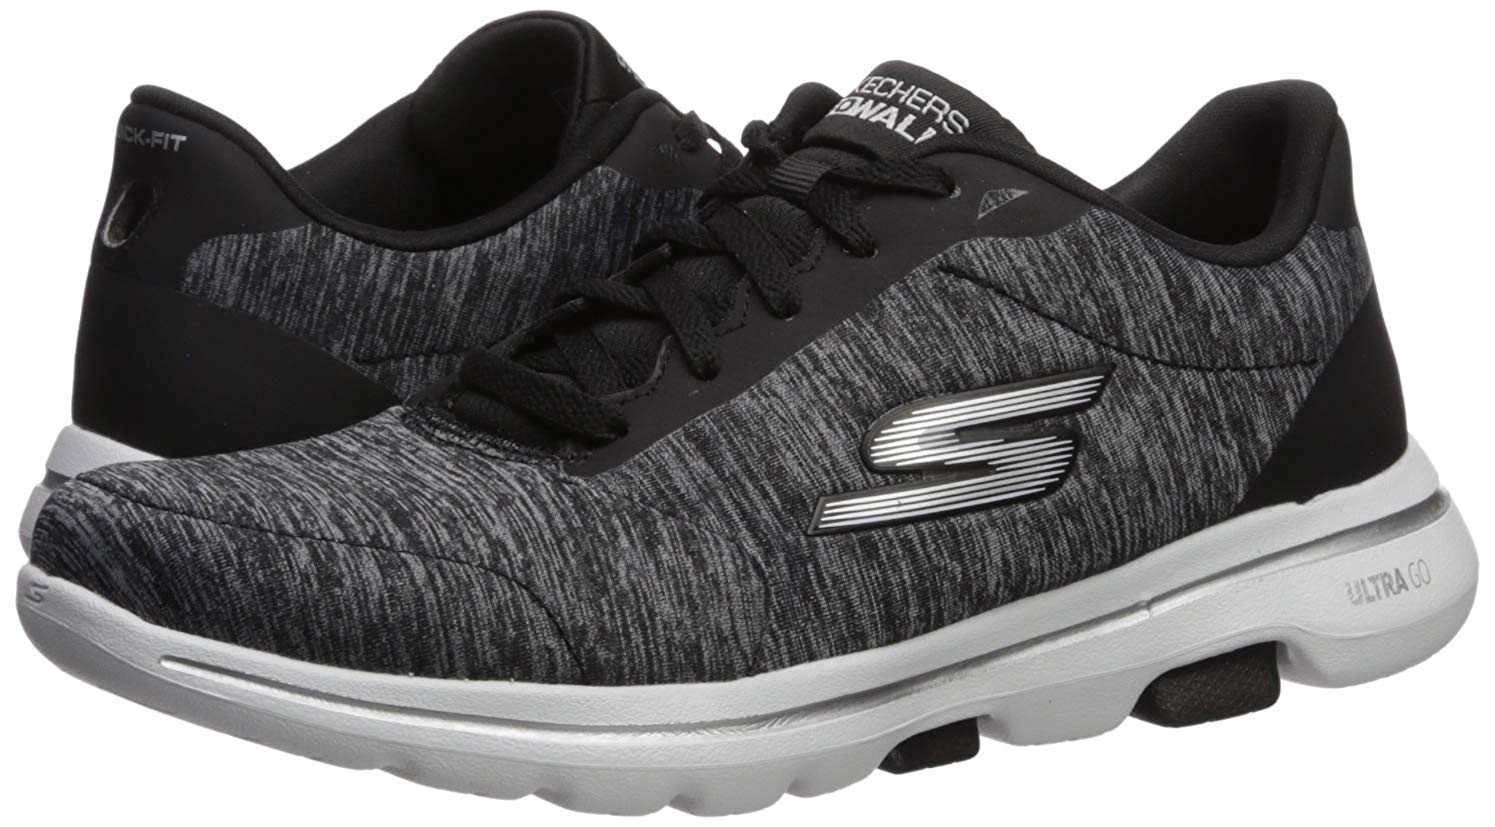 Skechers Women's Go Walk 5-True Sneaker, Black/White, Size 9.0 XhOE | eBay